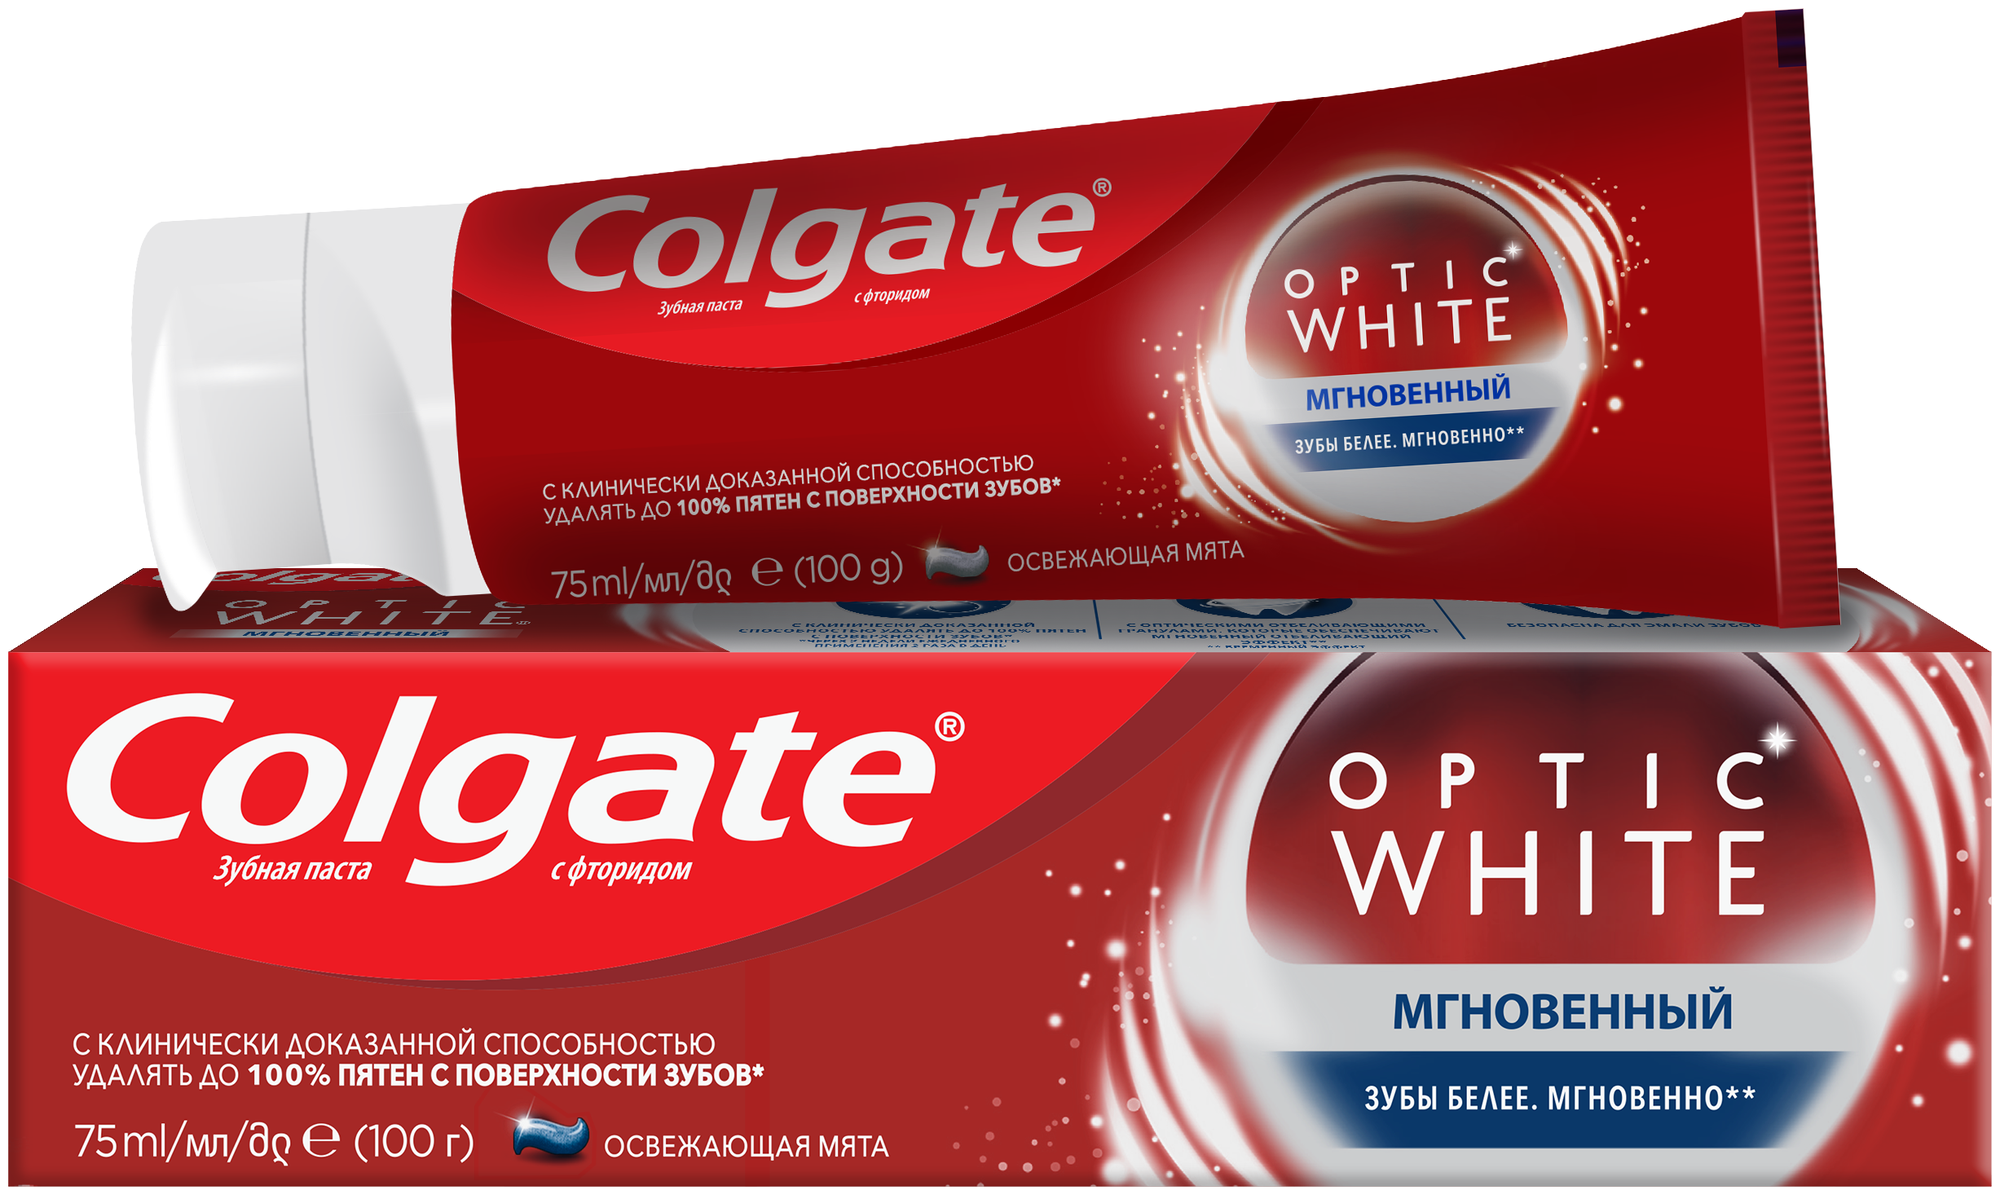 COLGATE Optic White Мгновенный отбеливающая зубная паста, 75 мл